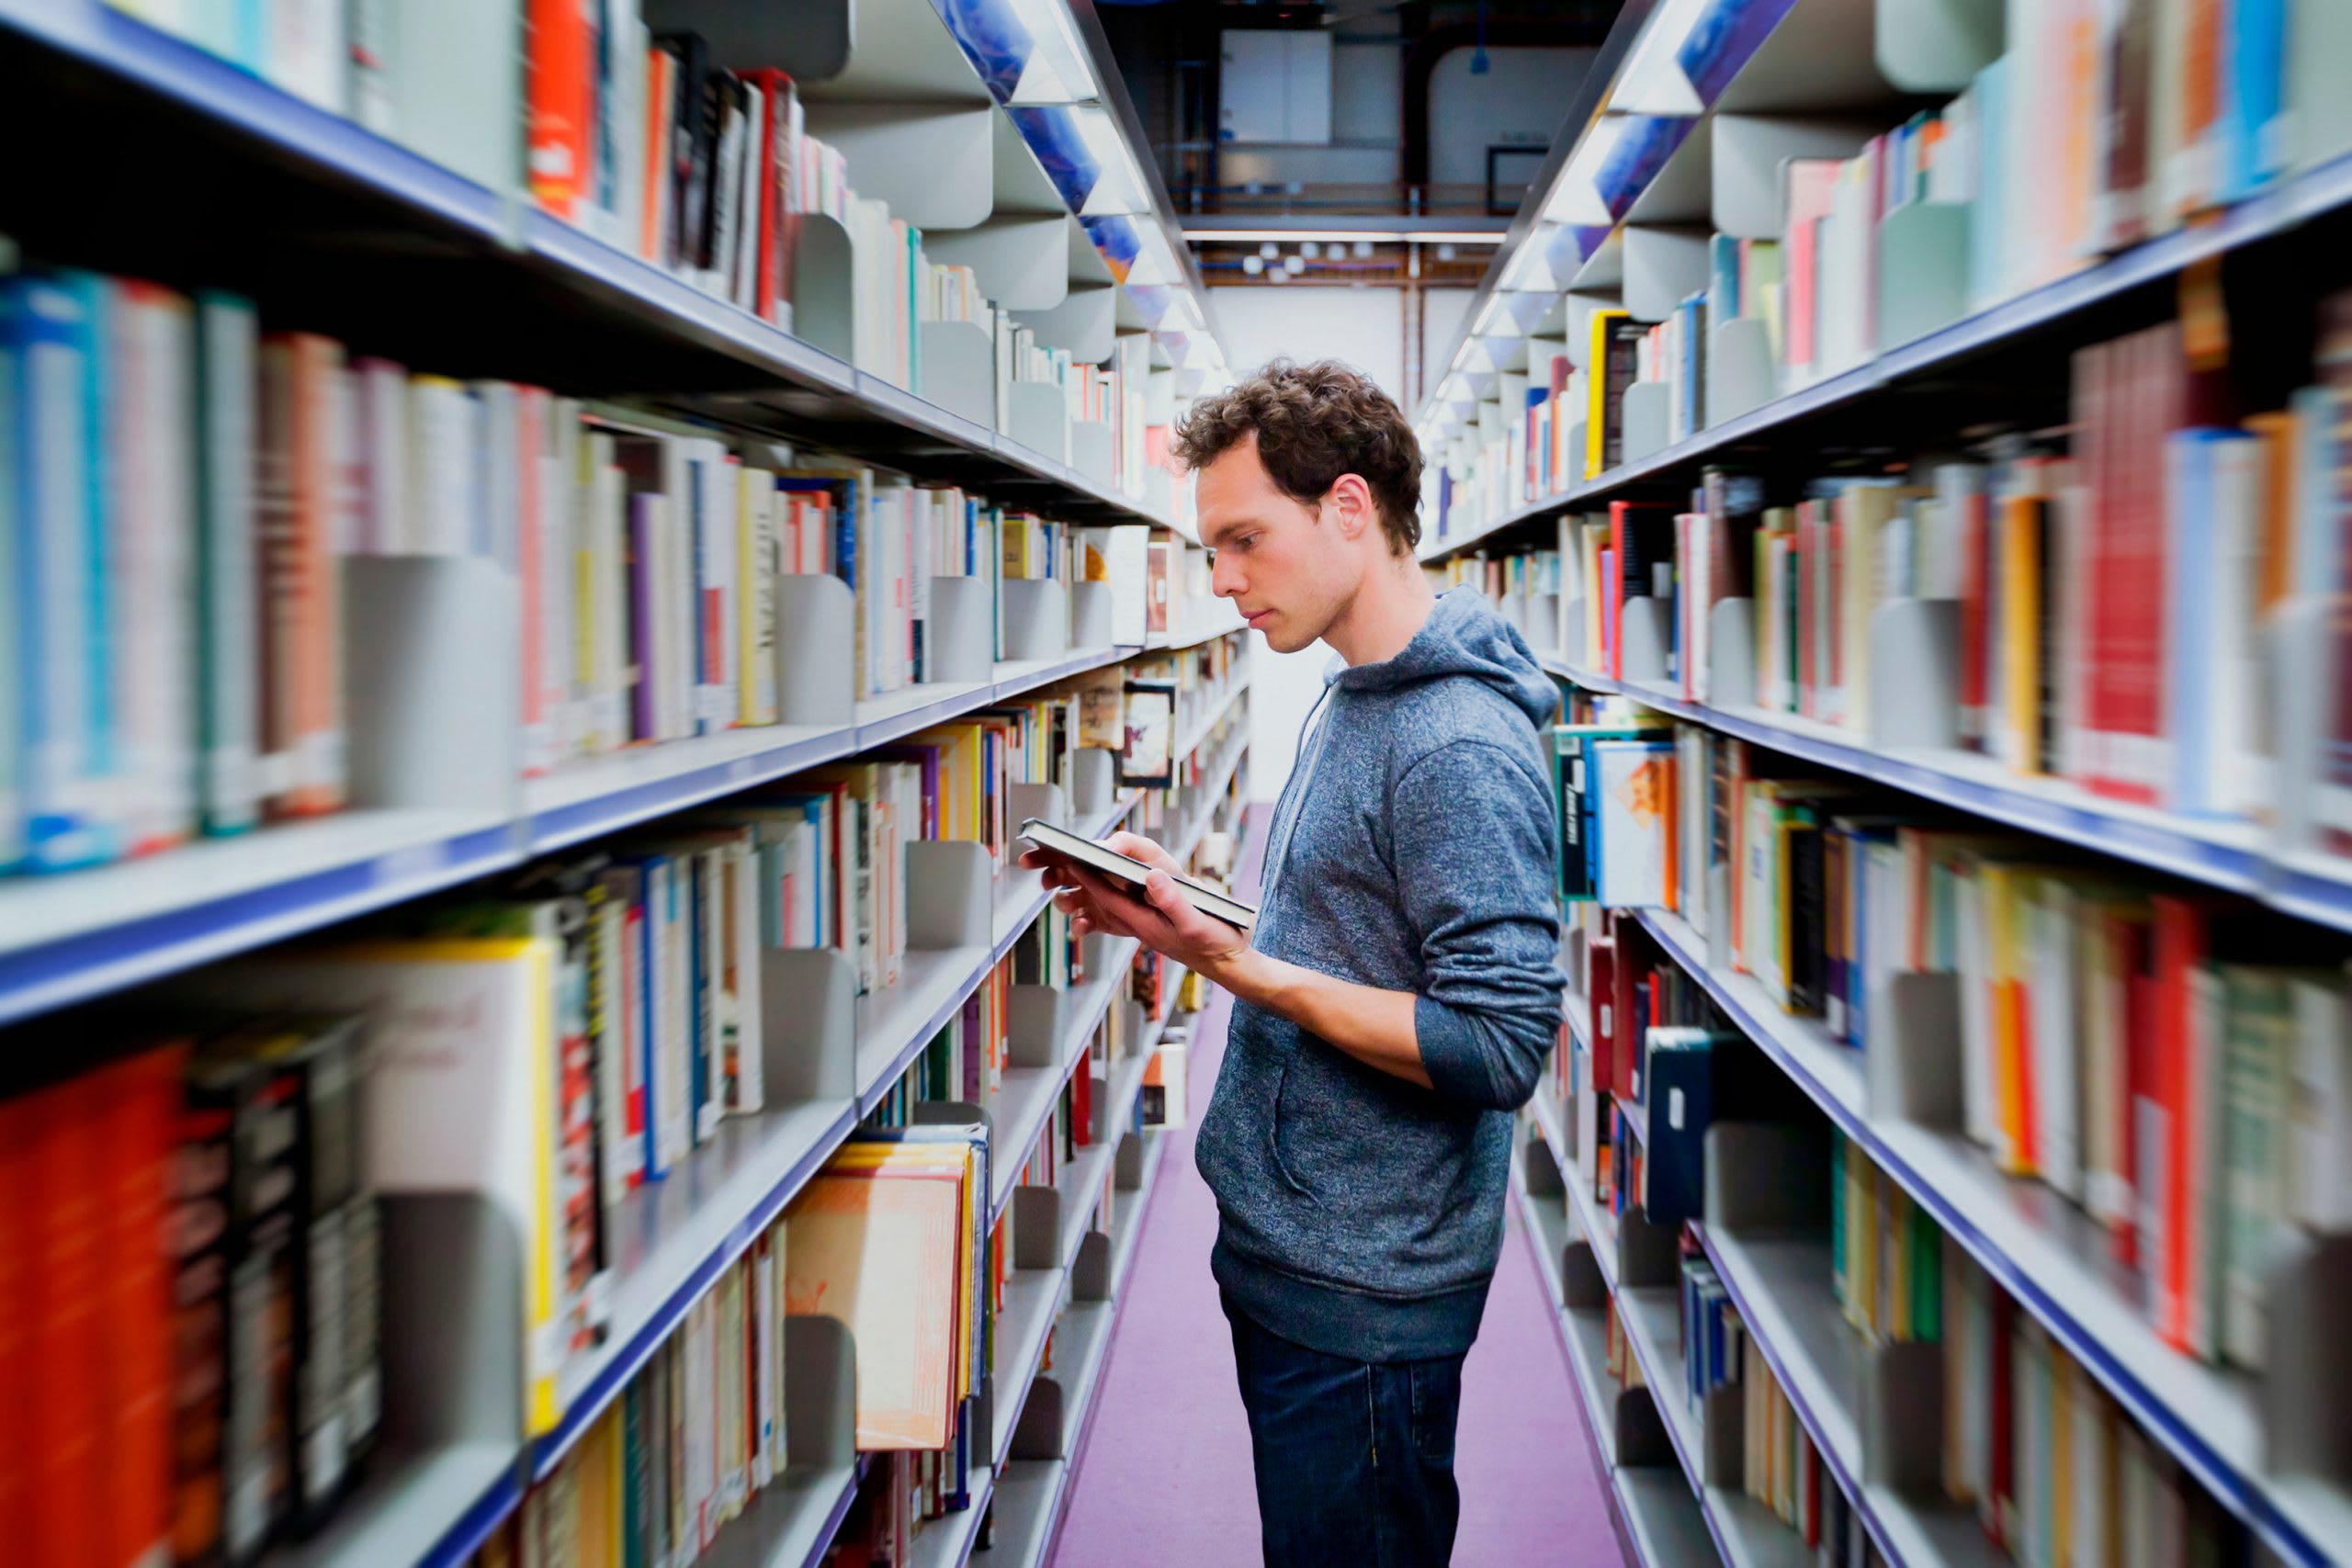 Відмінне місце, щоб сфокусуватися на навчанні: у чеській бібліотеці можна знайти рідкісні видання. Джерело: Shutterstock